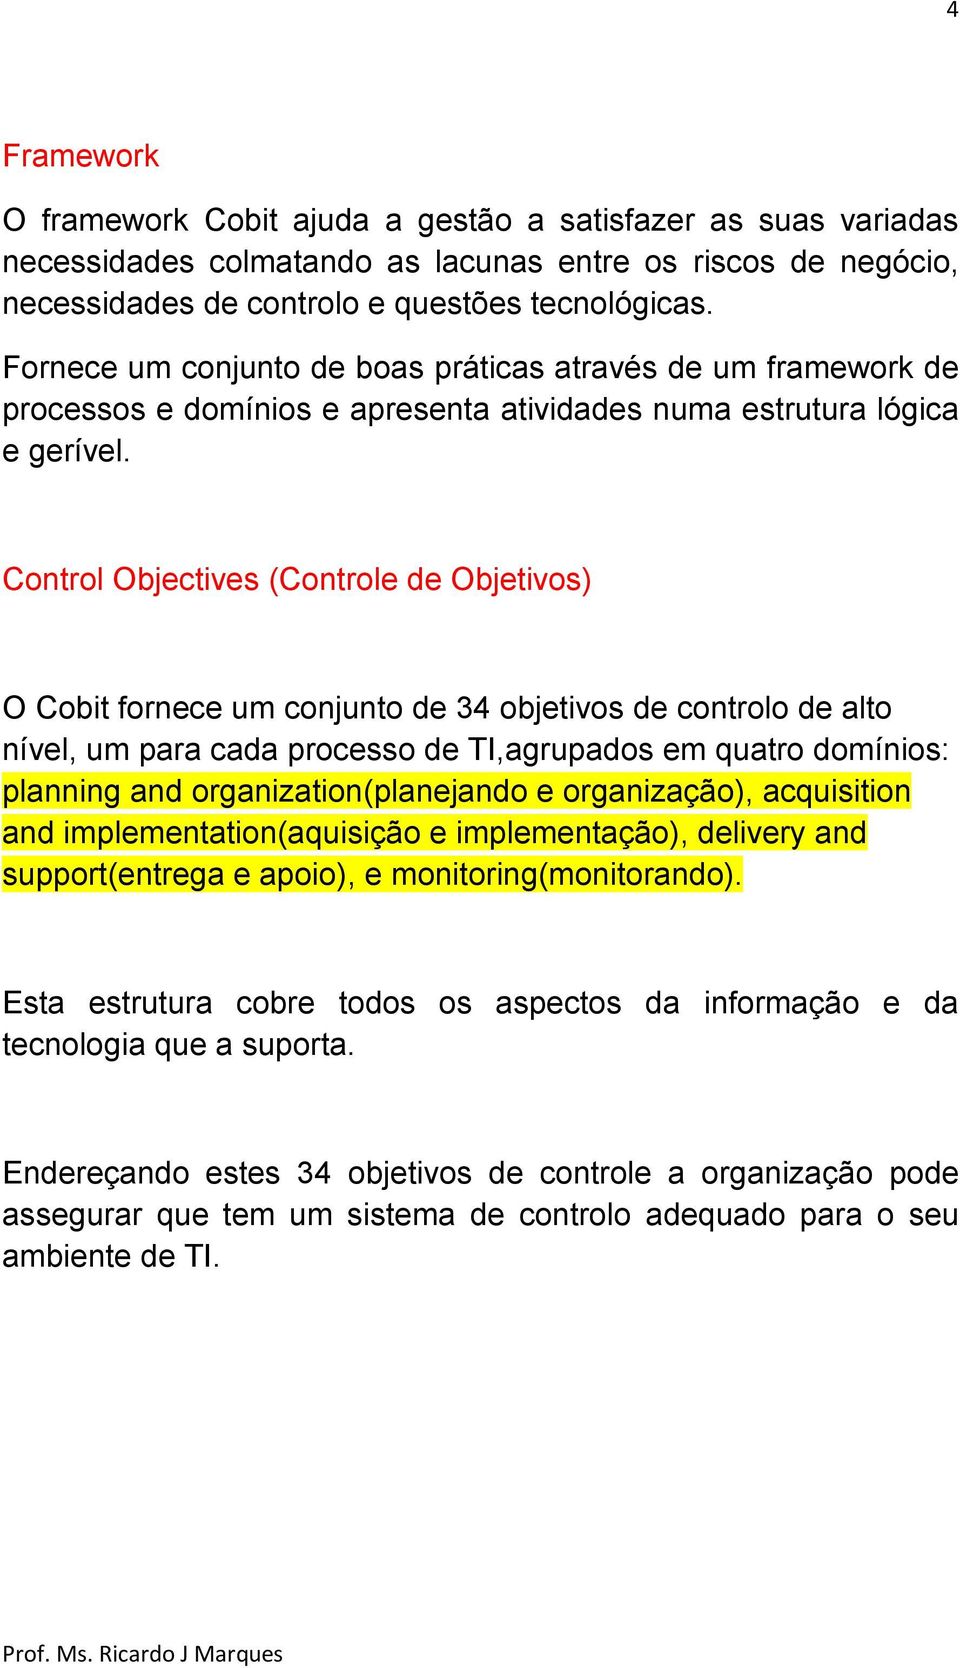 Control Objectives (Controle de Objetivos) O Cobit fornece um conjunto de 34 objetivos de controlo de alto nível, um para cada processo de TI,agrupados em quatro domínios: planning and